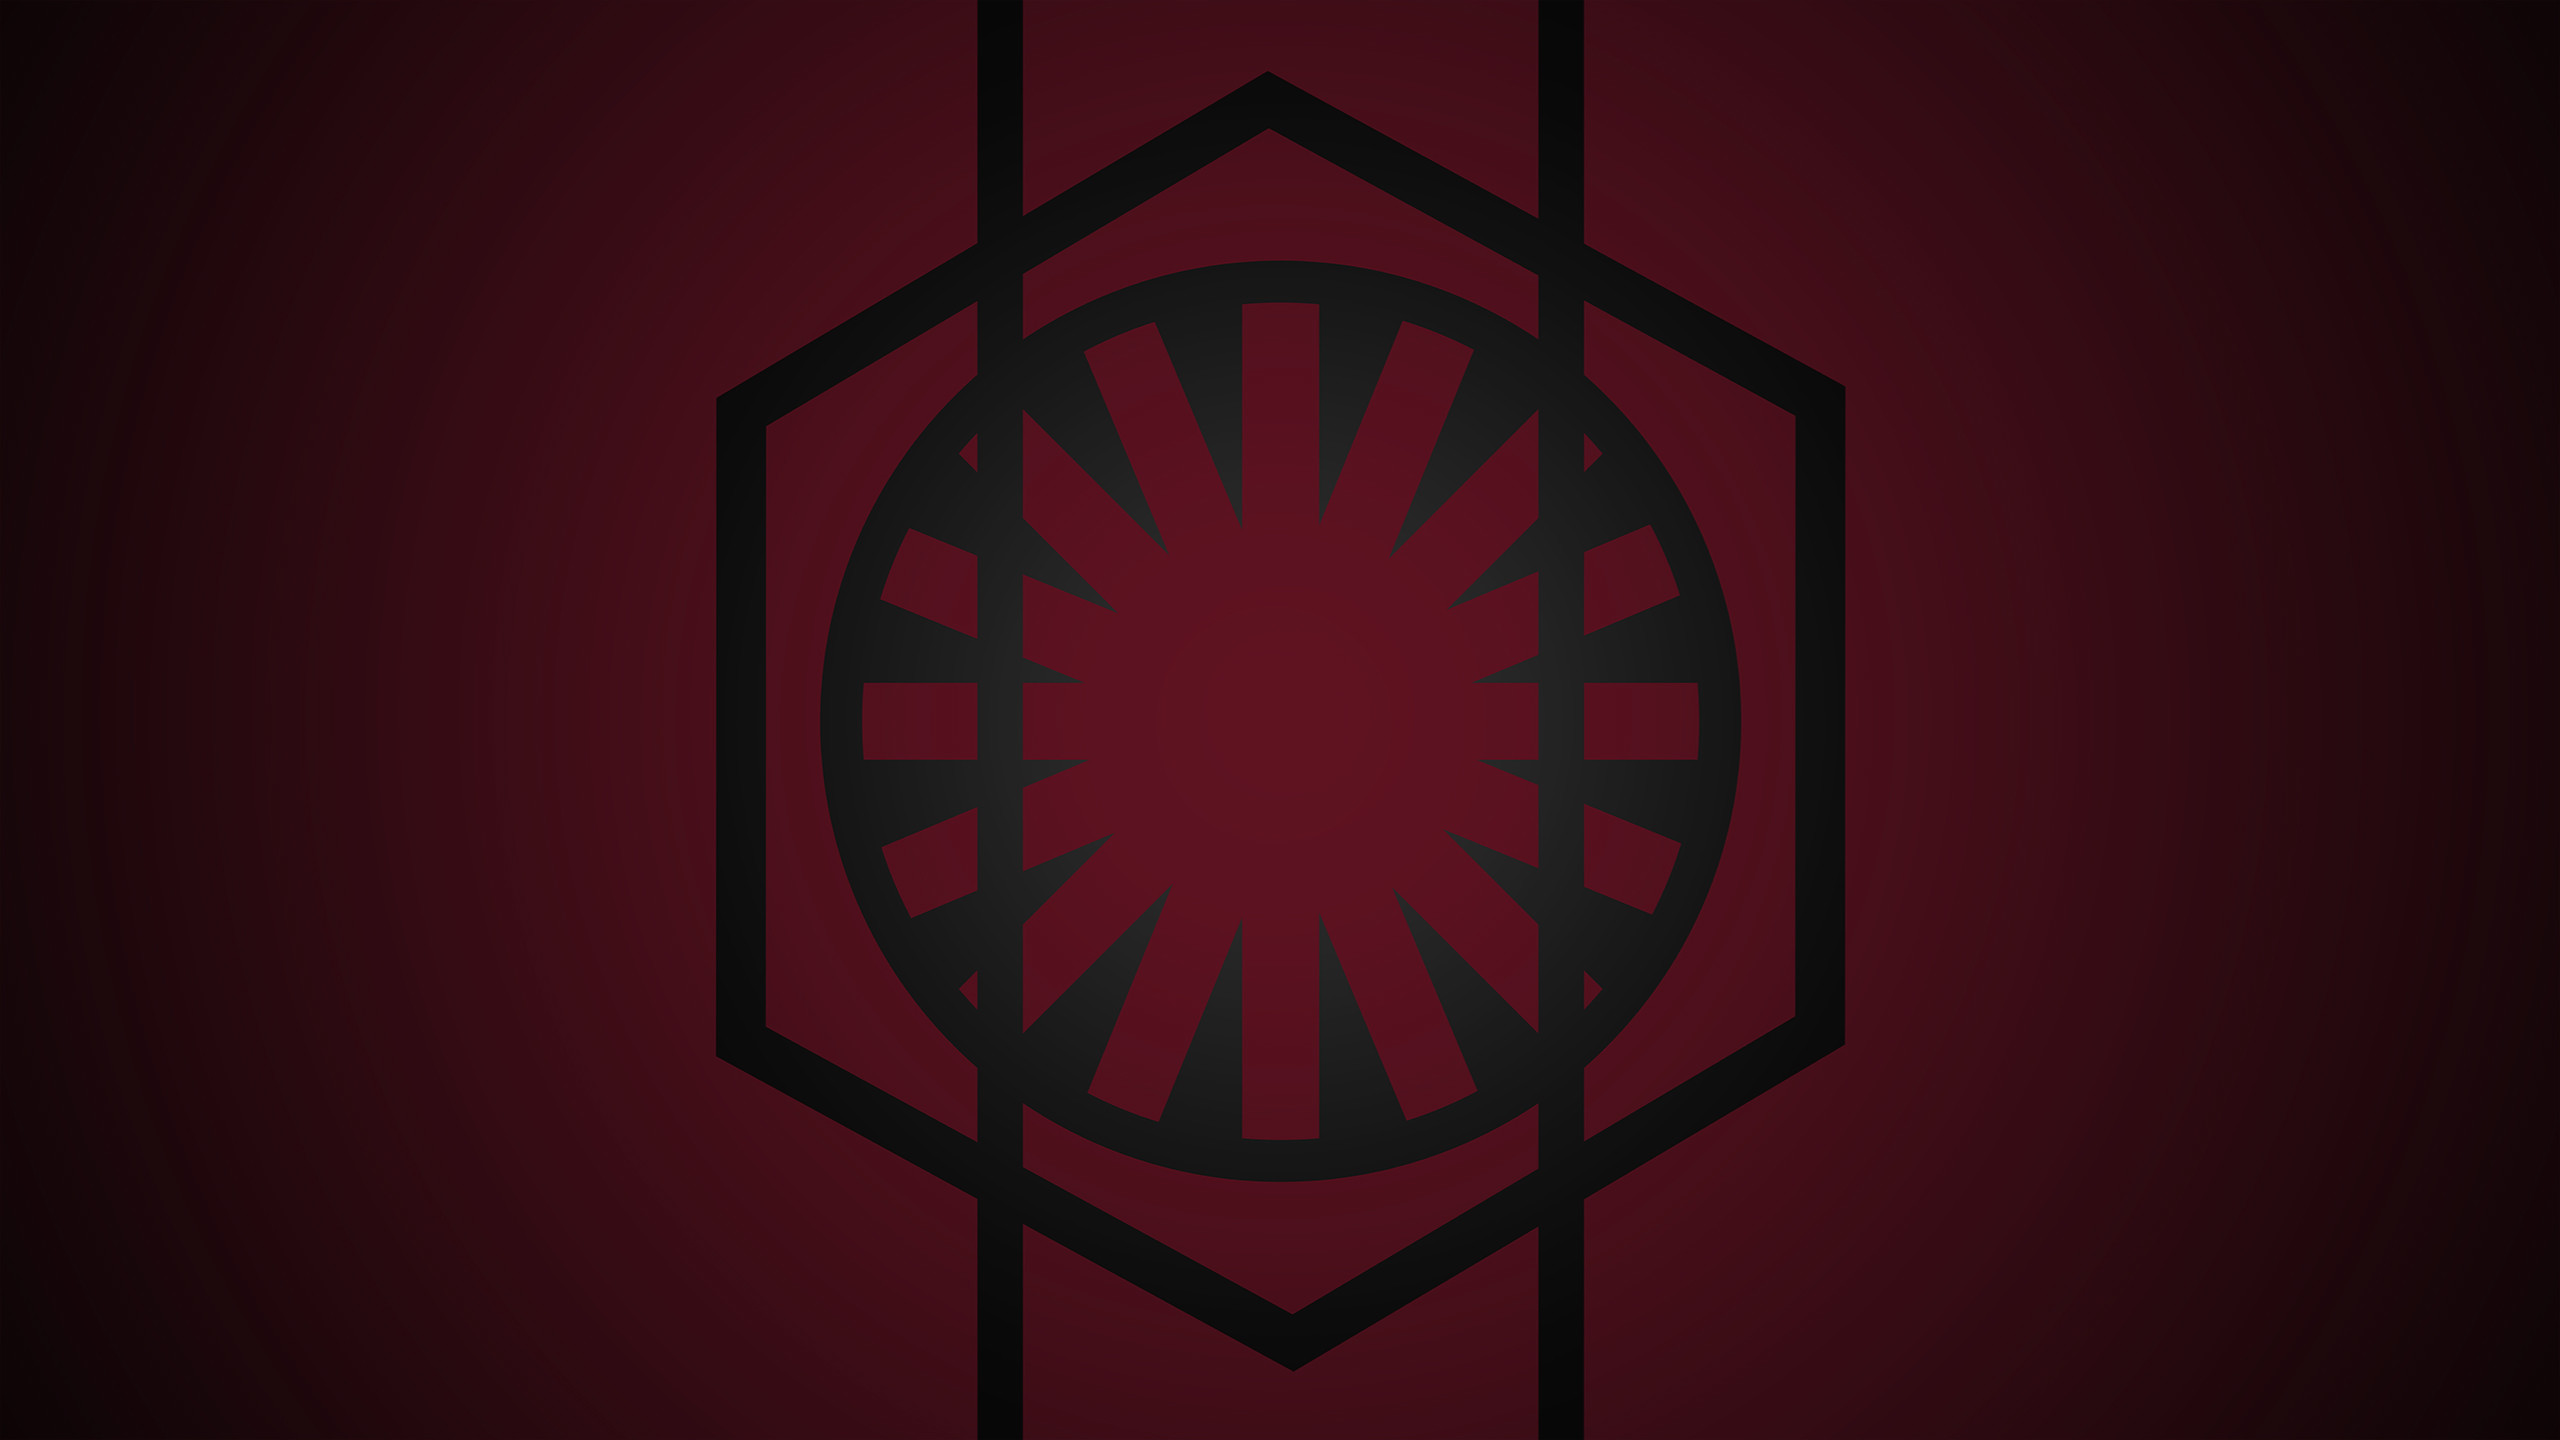 First Order Stormtrooper Wallpaper – WallpaperSafari